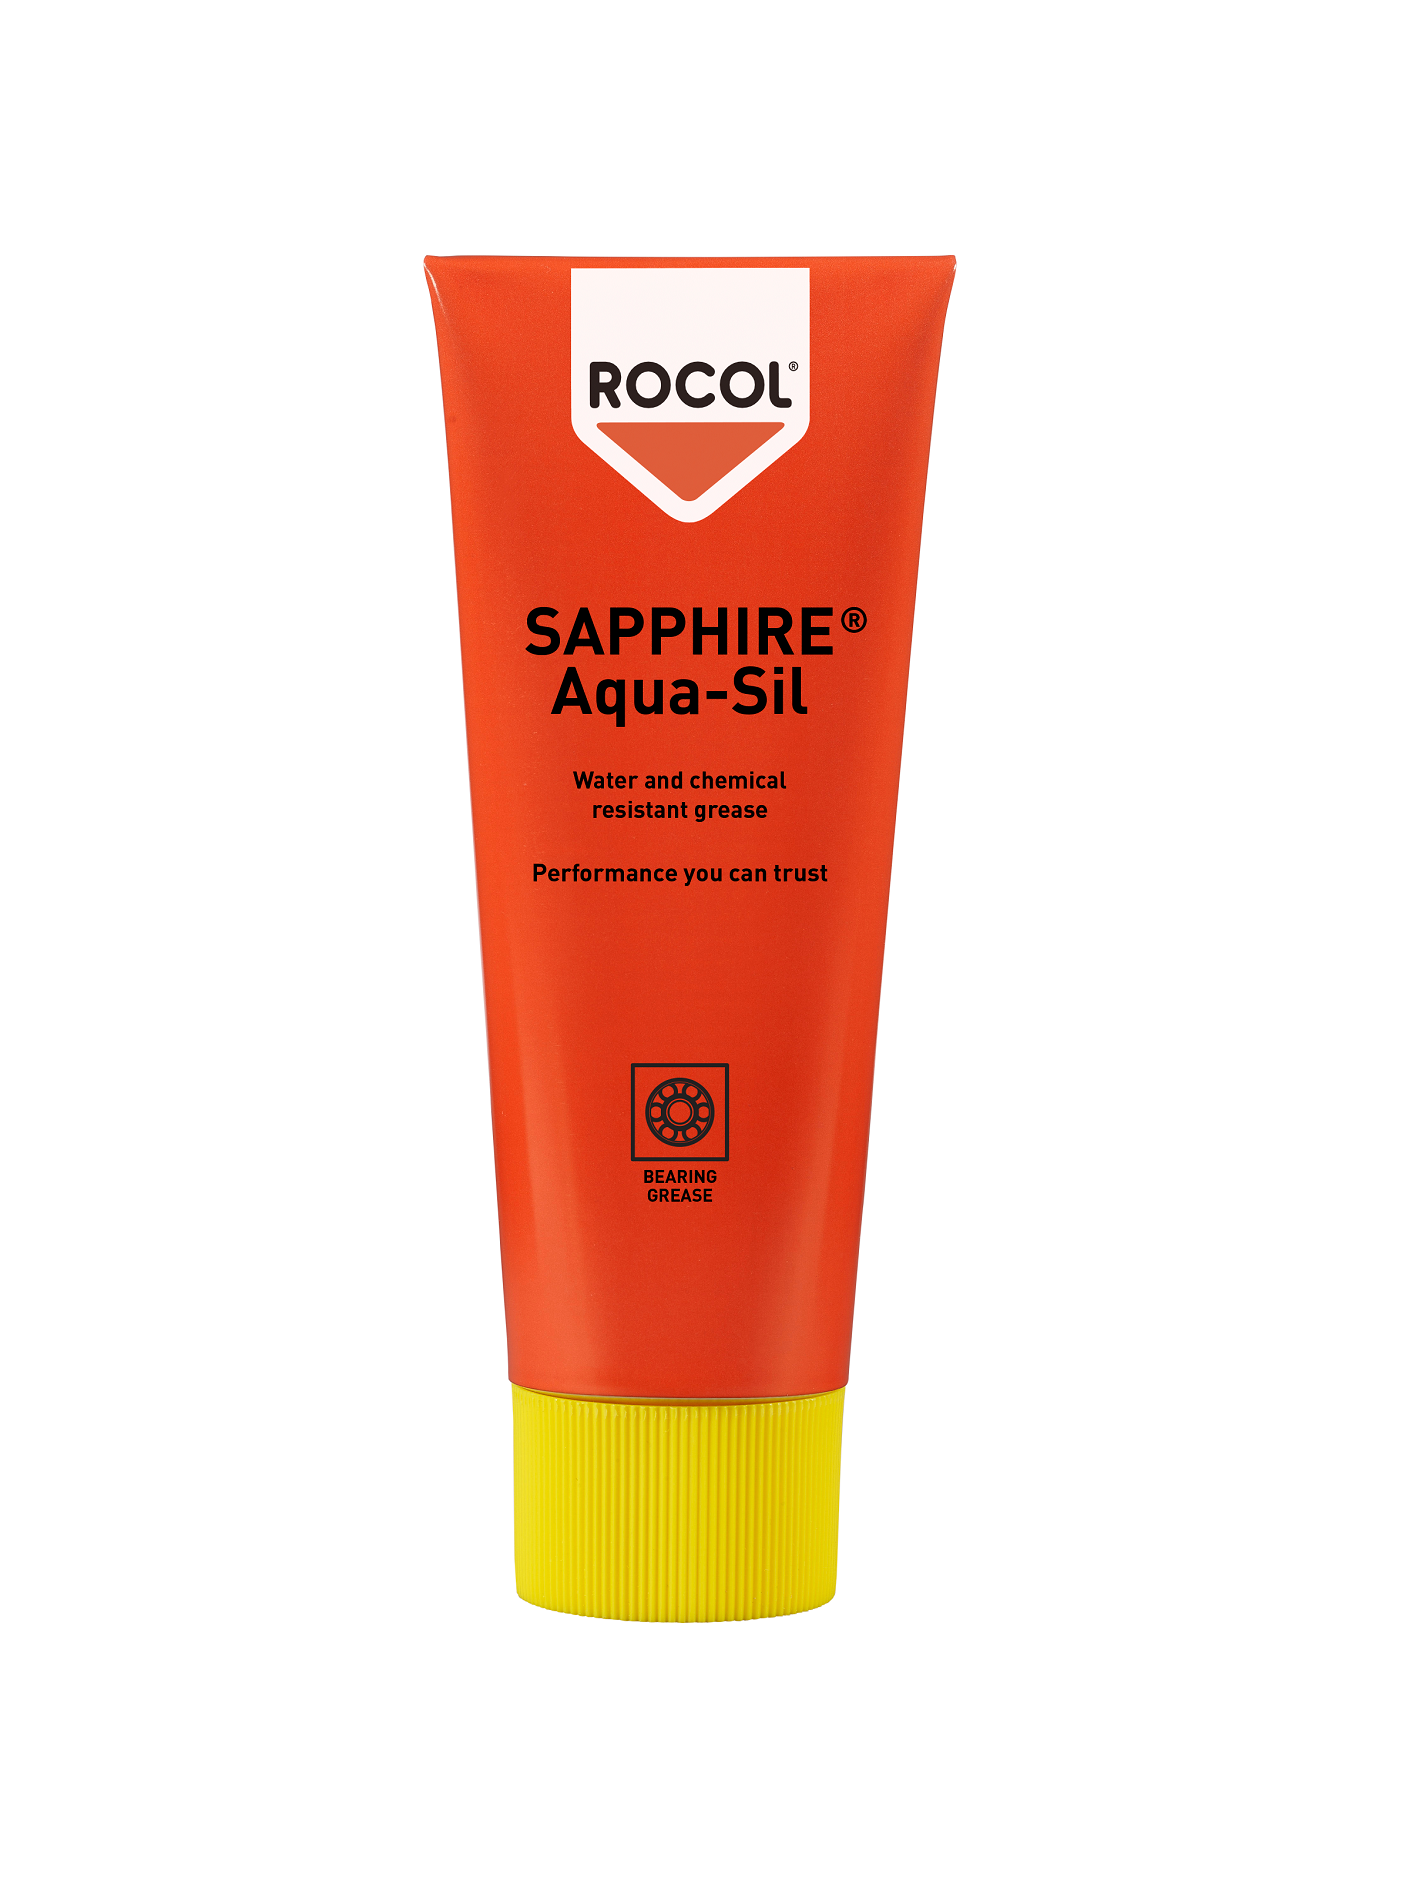 Rocol Sapphire Aqua-Sil | 85g Tube